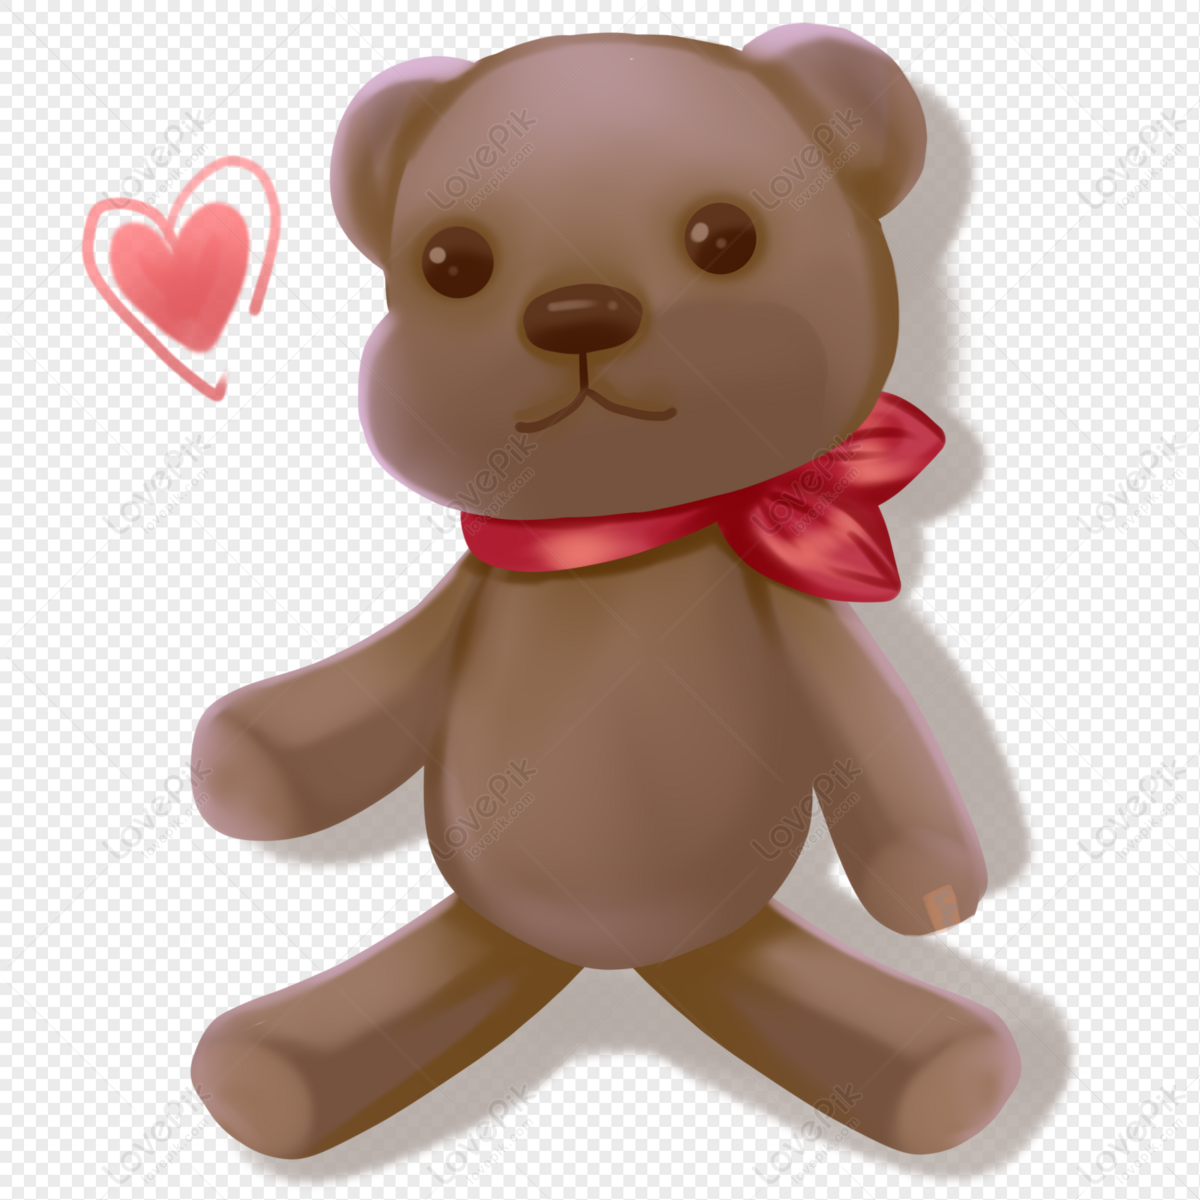 Với hình ảnh gấu Teddy PNG này, bạn có thể thoải mái sáng tạo, tạo ra một món quà hoàn hảo hoặc chỉ đơn giản là trang trí cho phòng của bạn. Với nền trong suốt trong suốt, các hình ảnh có thể dễ dàng được chỉnh sửa theo ý muốn của bạn.